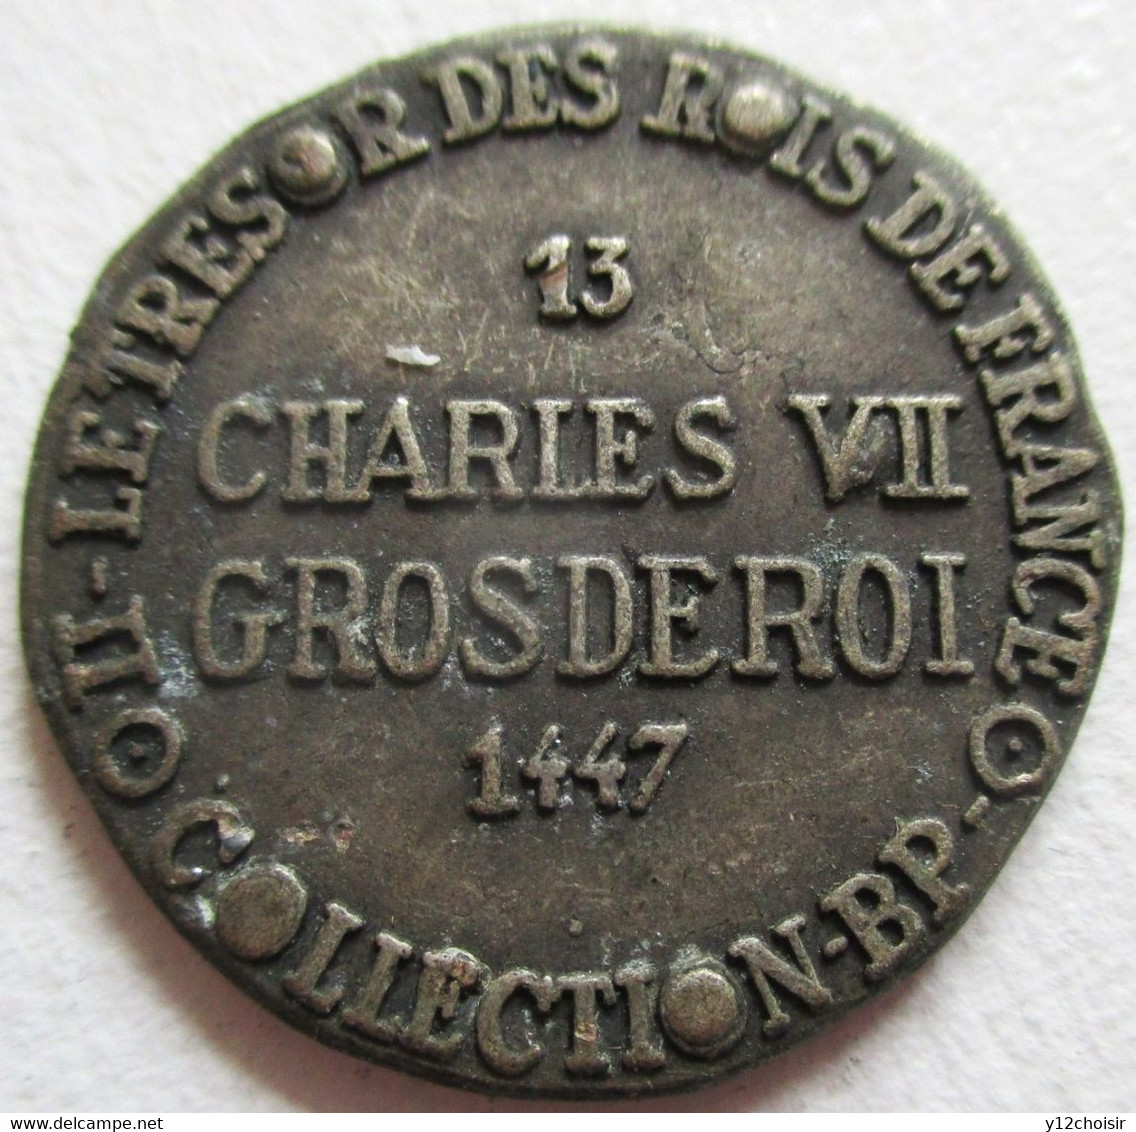 PIECE METAL CHARLES VII GROSDEROI 1447 FLEUR DE LYS LE TRESOR DES ROIS DE FRANCE COLLECTION BP - Specimen